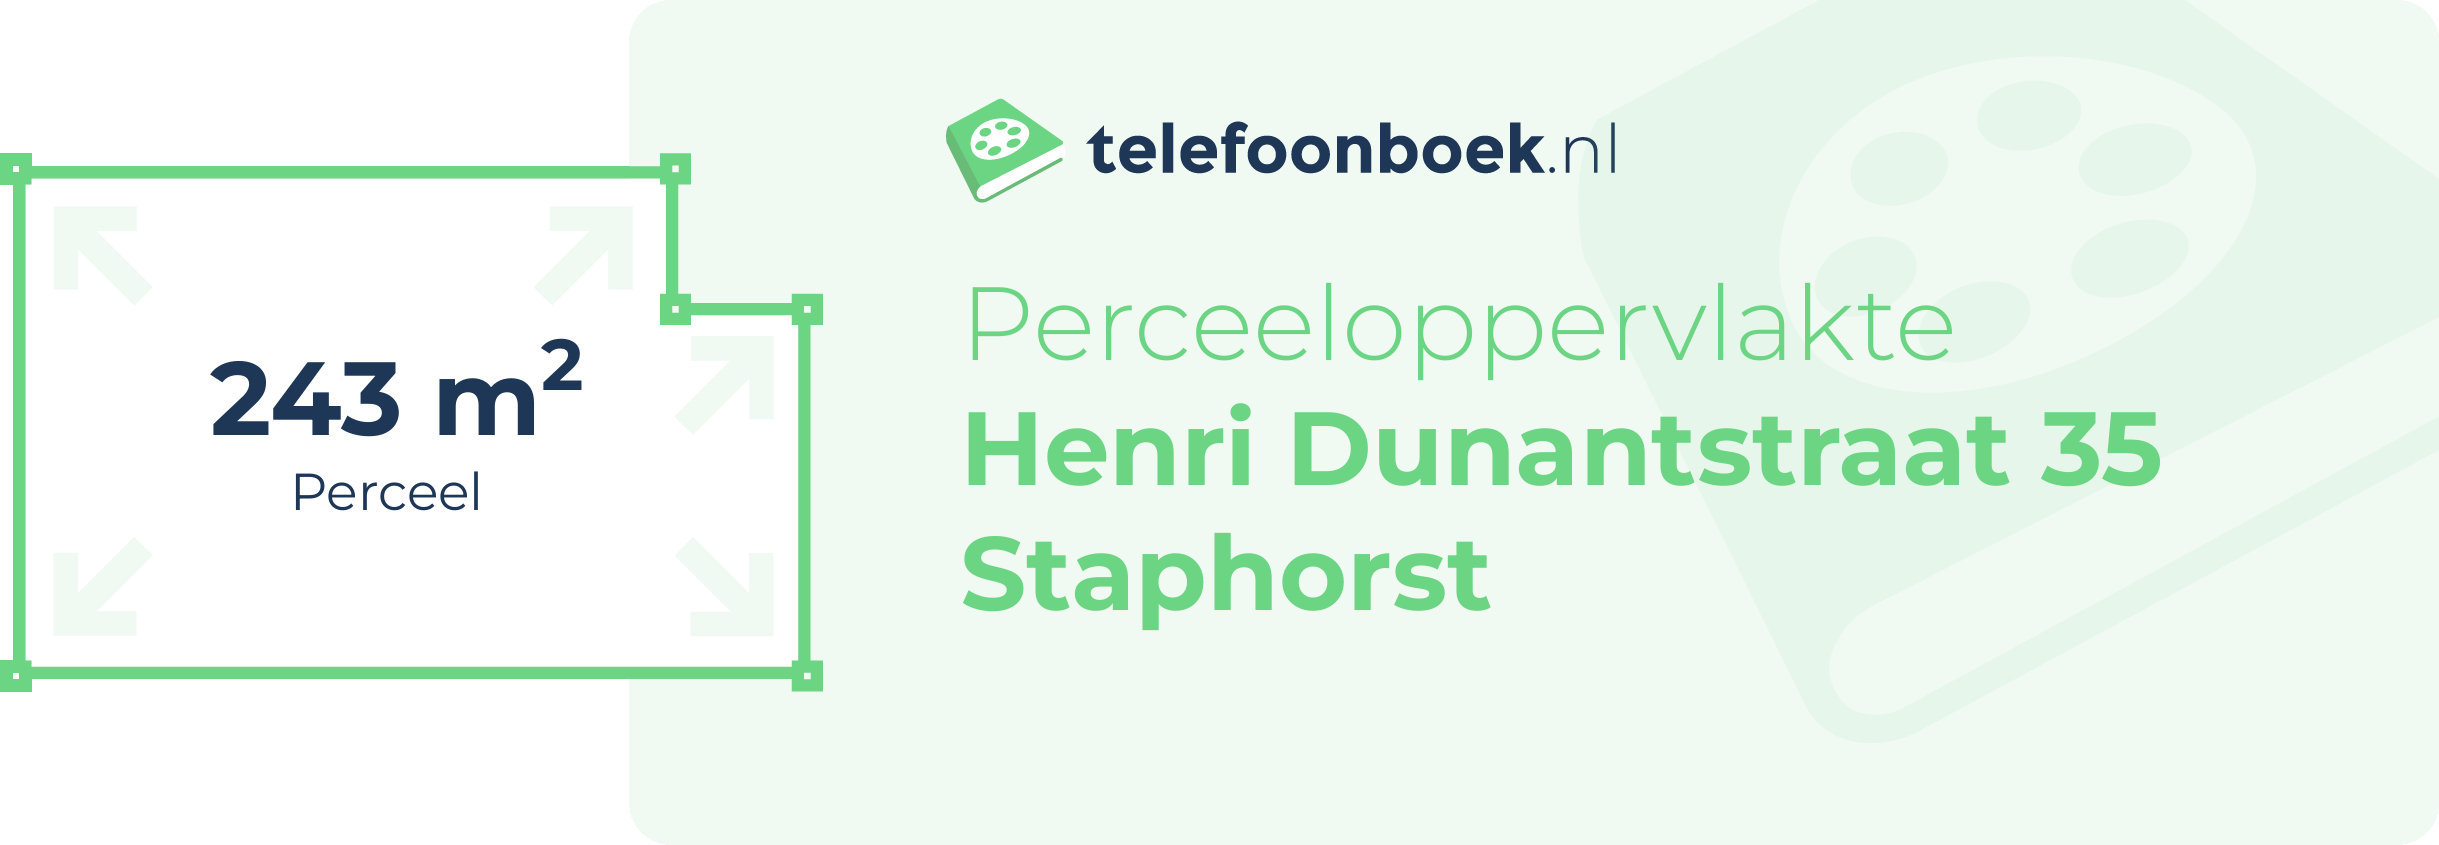 Perceeloppervlakte Henri Dunantstraat 35 Staphorst